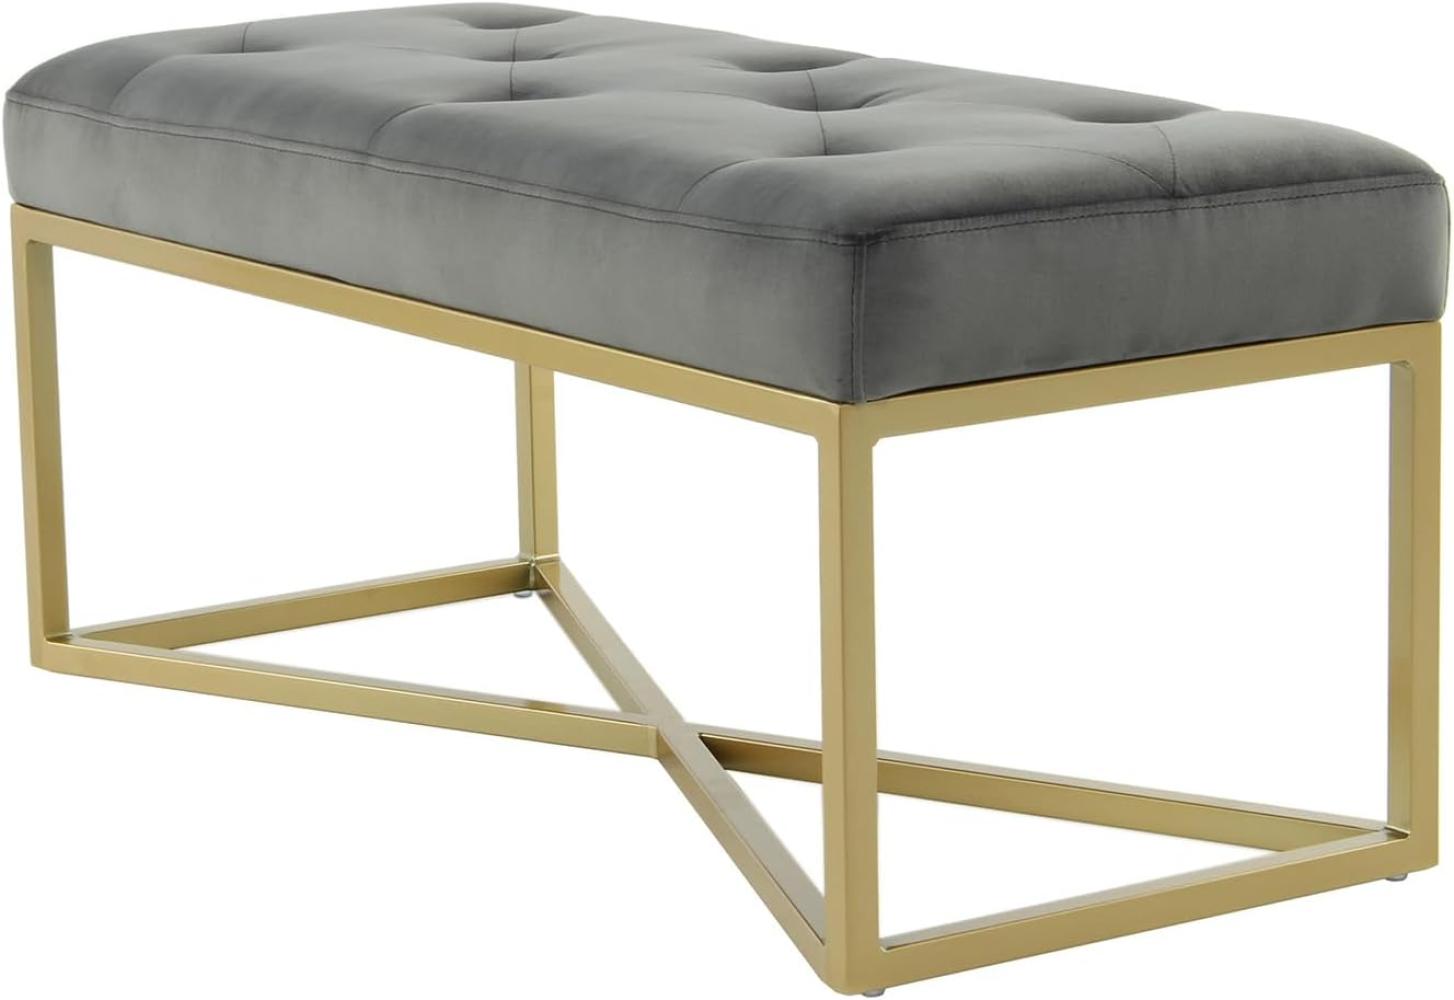 Qiyano Sitzbank Samt Gesteppte Polsterbank Bettbank für Schlafzimmer Wohnzimmer Flur Ankleidezimmer im Barock-Stil mit goldenen Metallfüßen, Farbe: Grau Bild 1